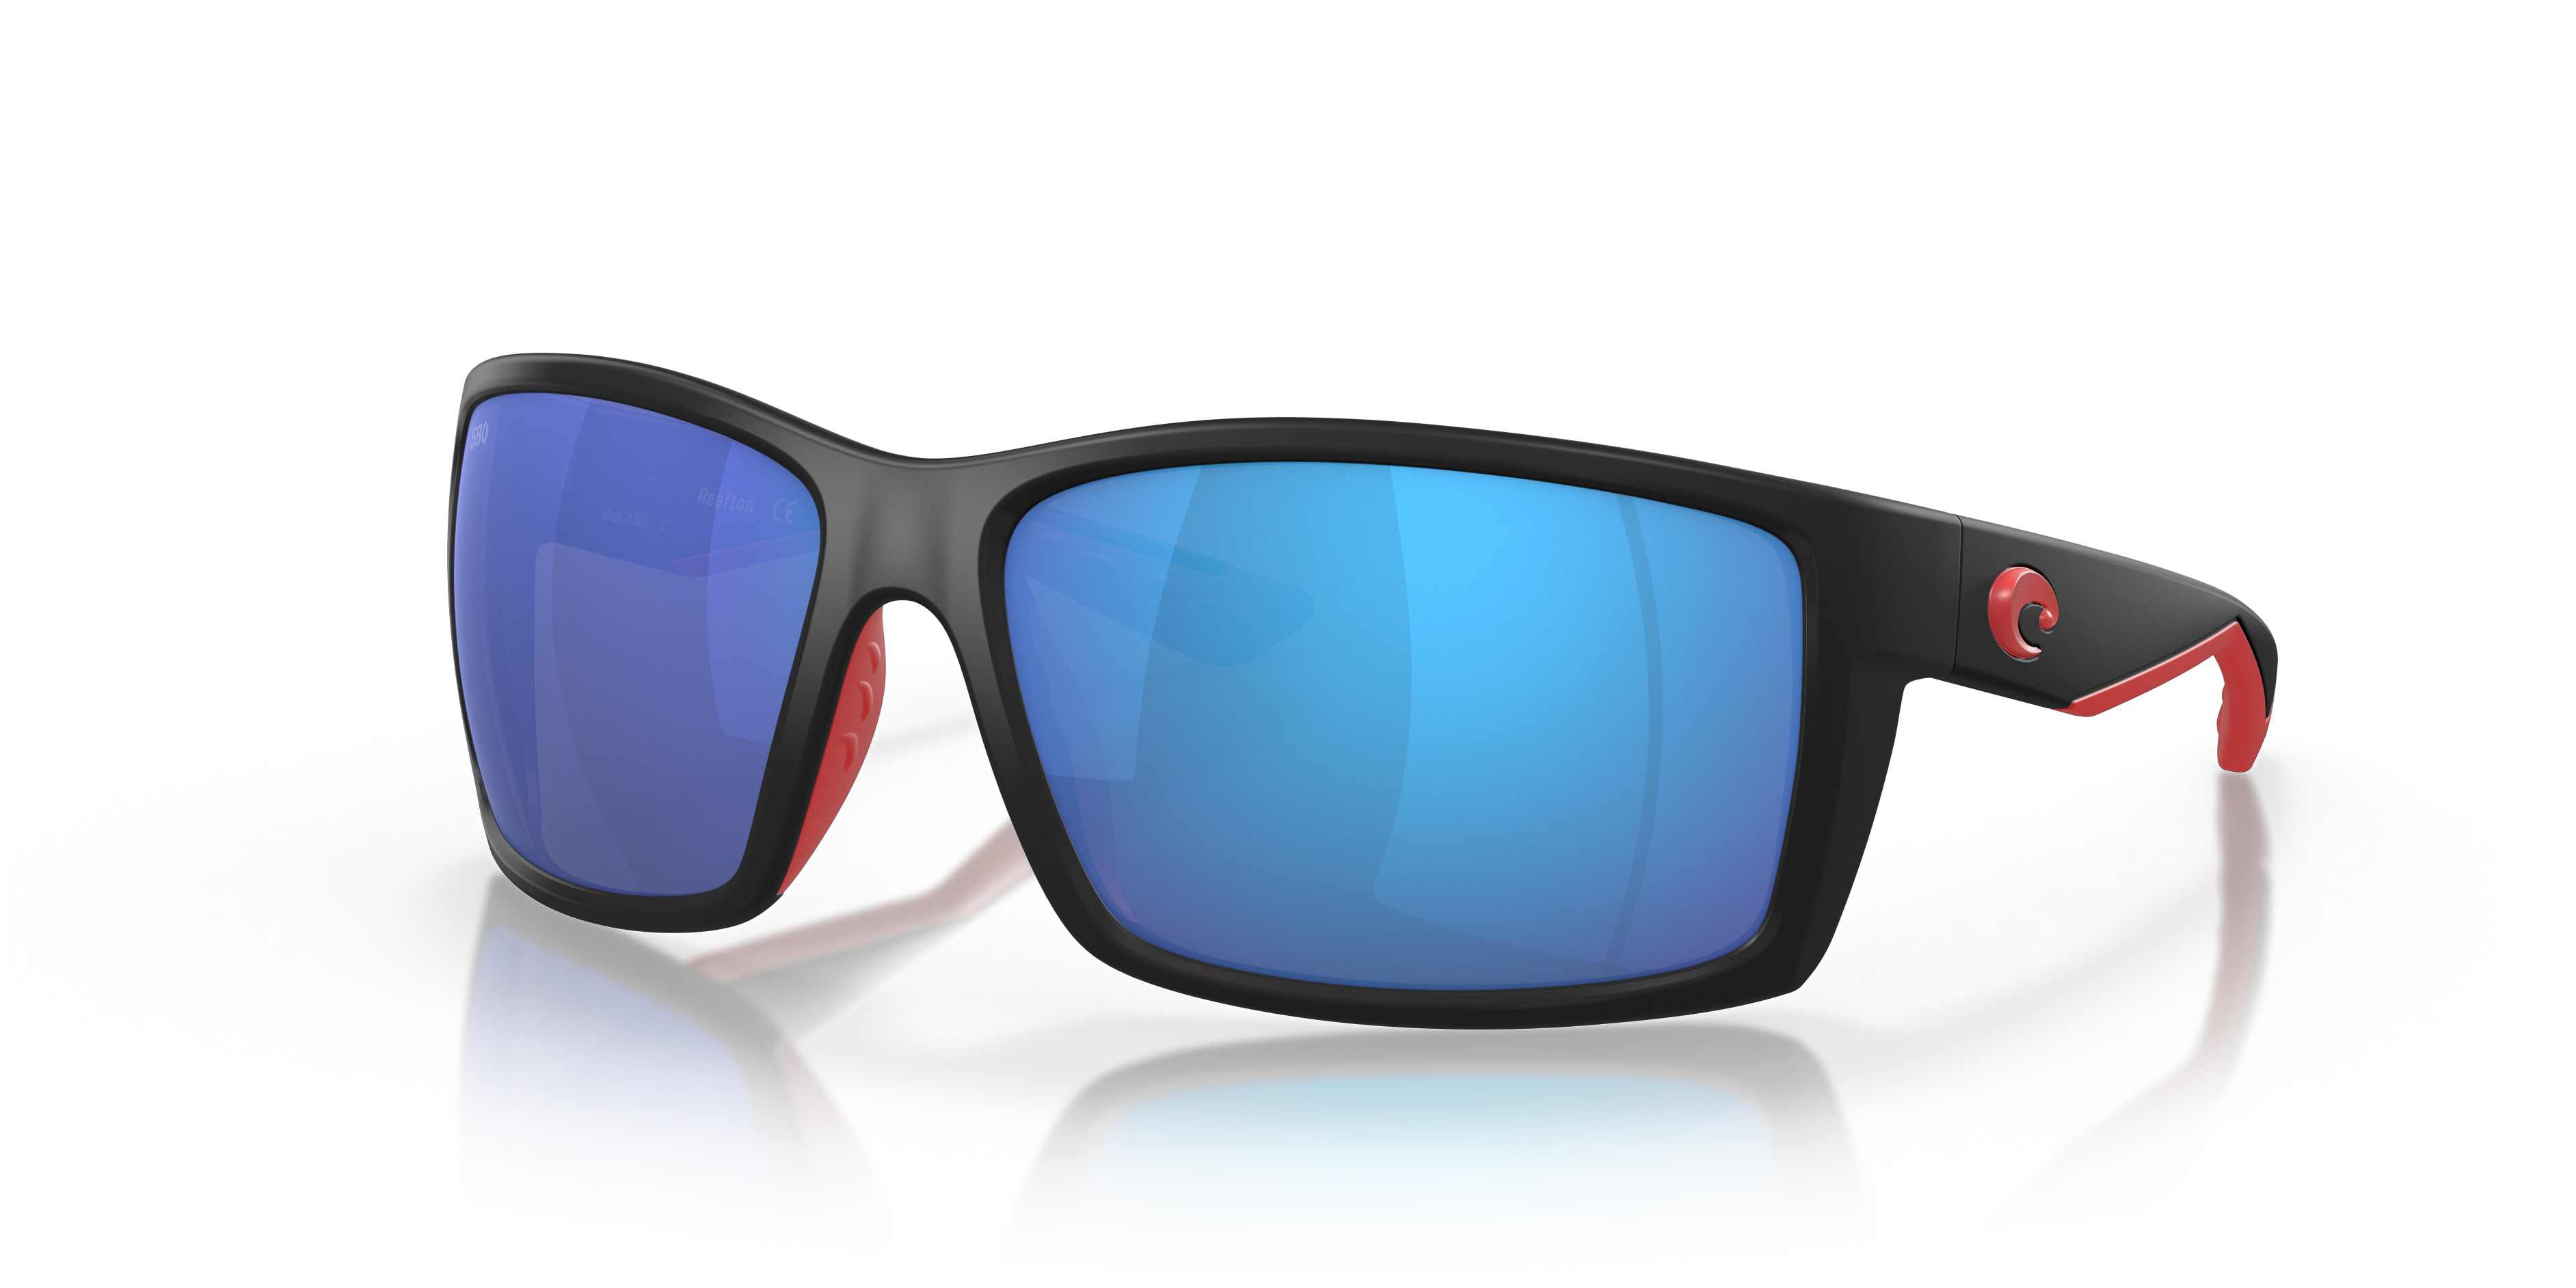 Reefton Polarized Sunglasses in Blue Mirror | Costa Del Mar®